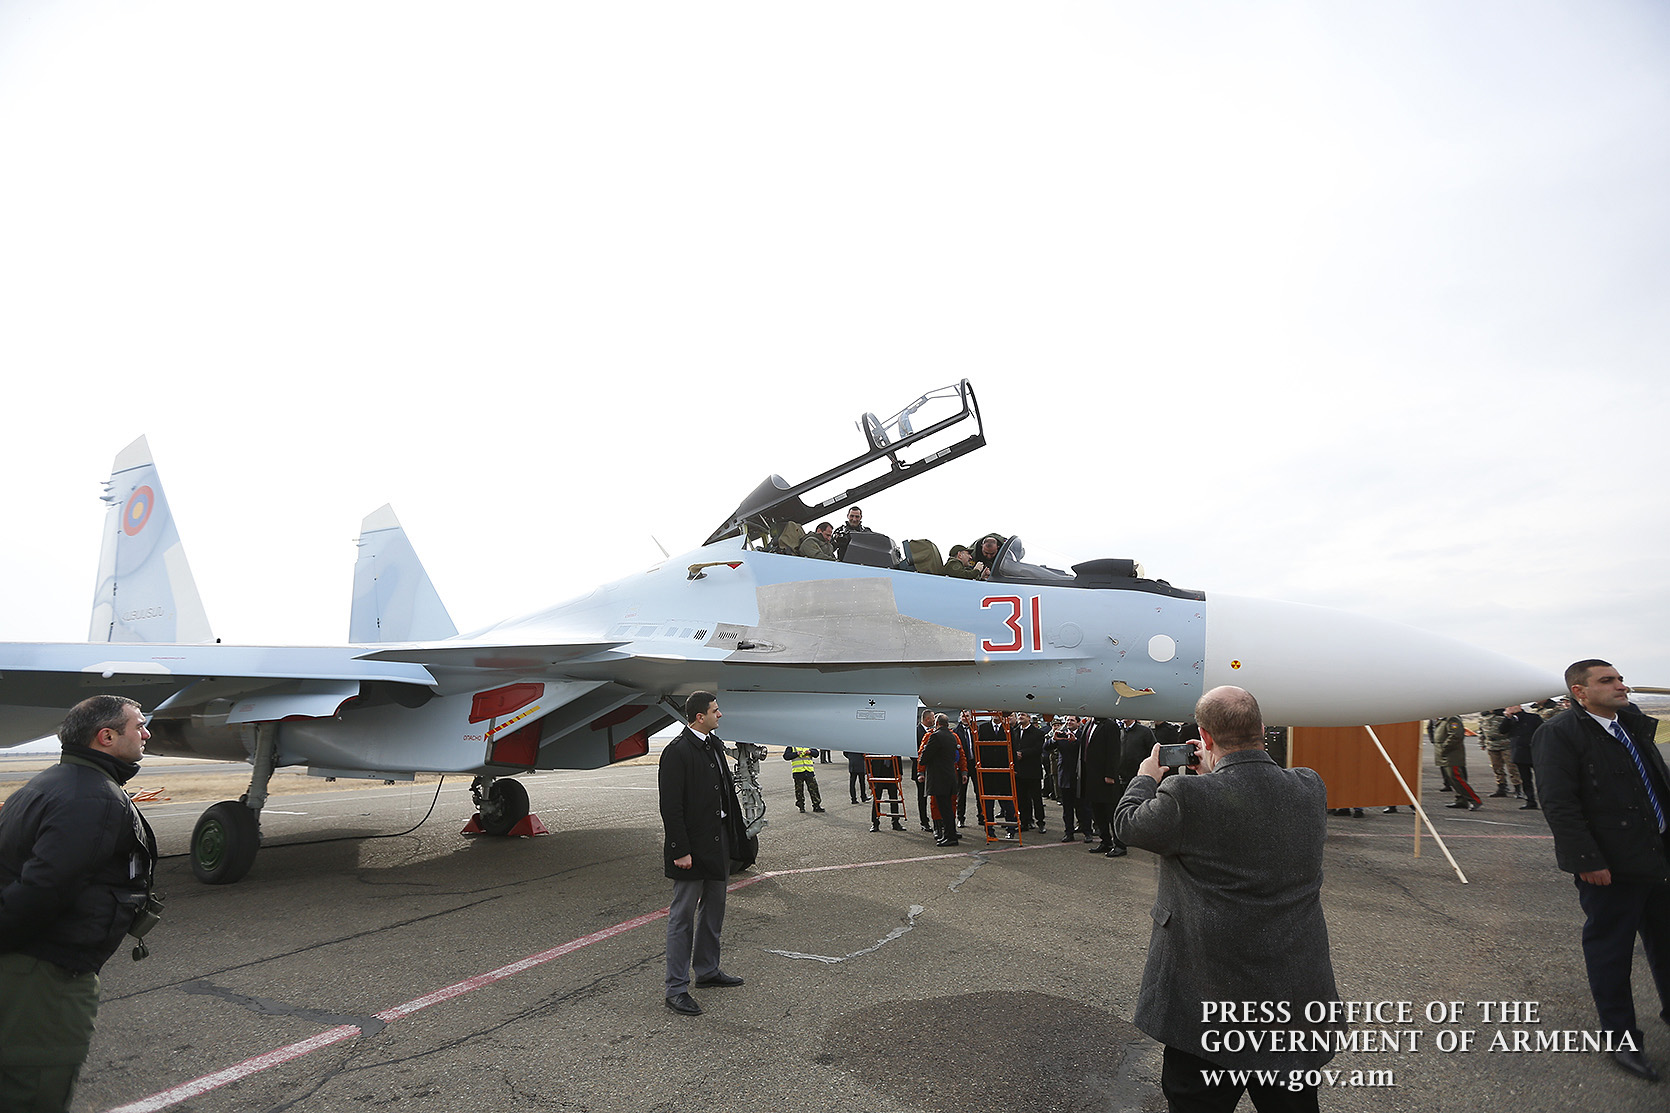 ВВС Армении пополнились многофункциональными истребителями Су-30СМ